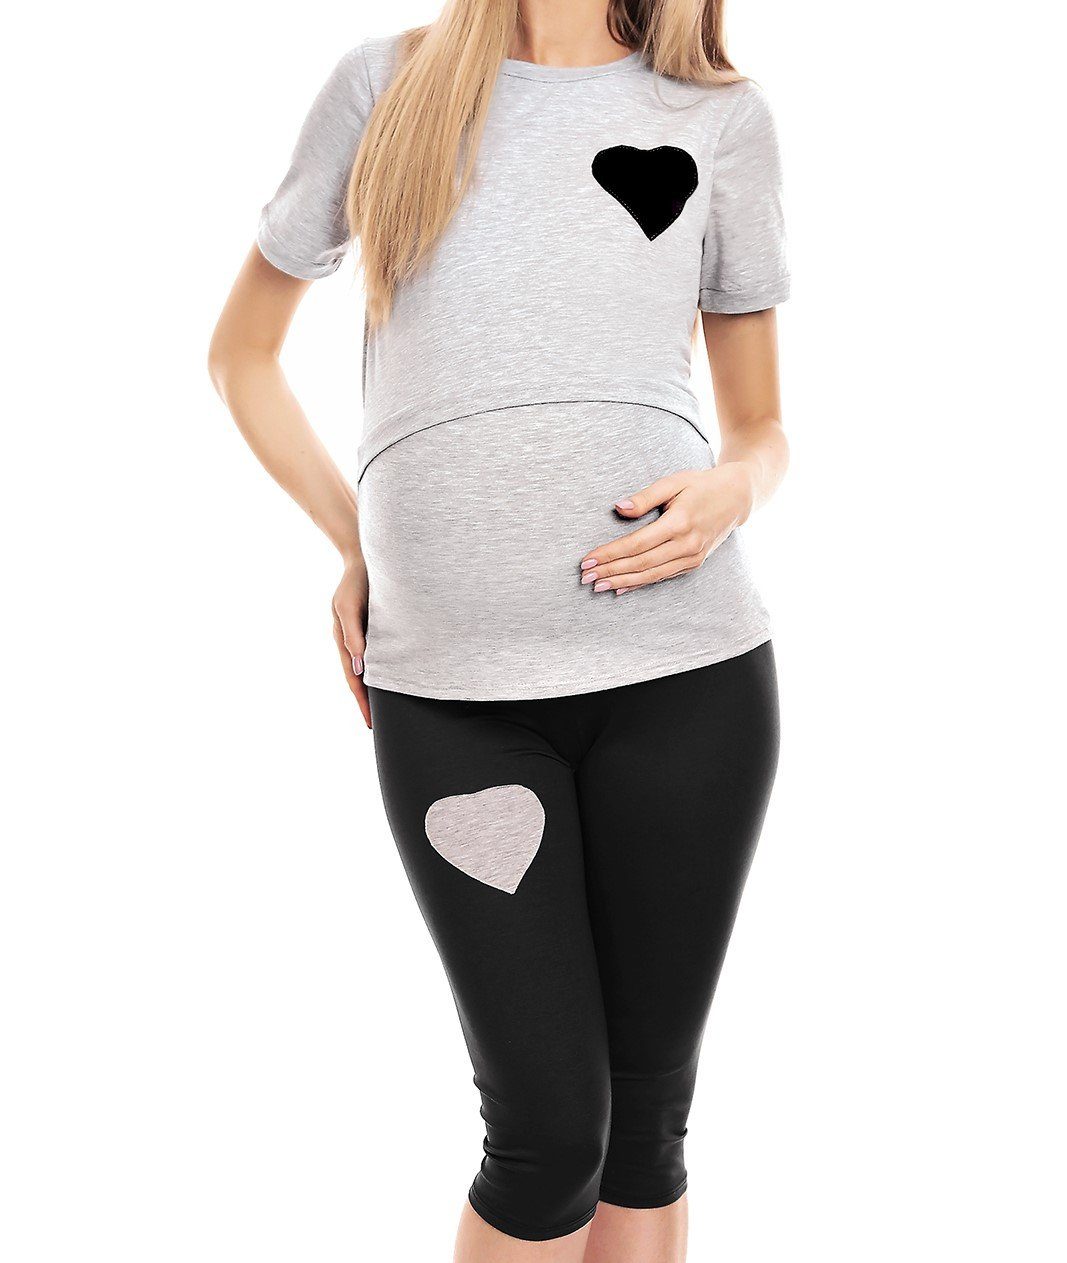 PeeKaBoo Umstandspyjama Schlafanzug Stillen Schwangerschaft Stillschlafanzug grau/schwarz